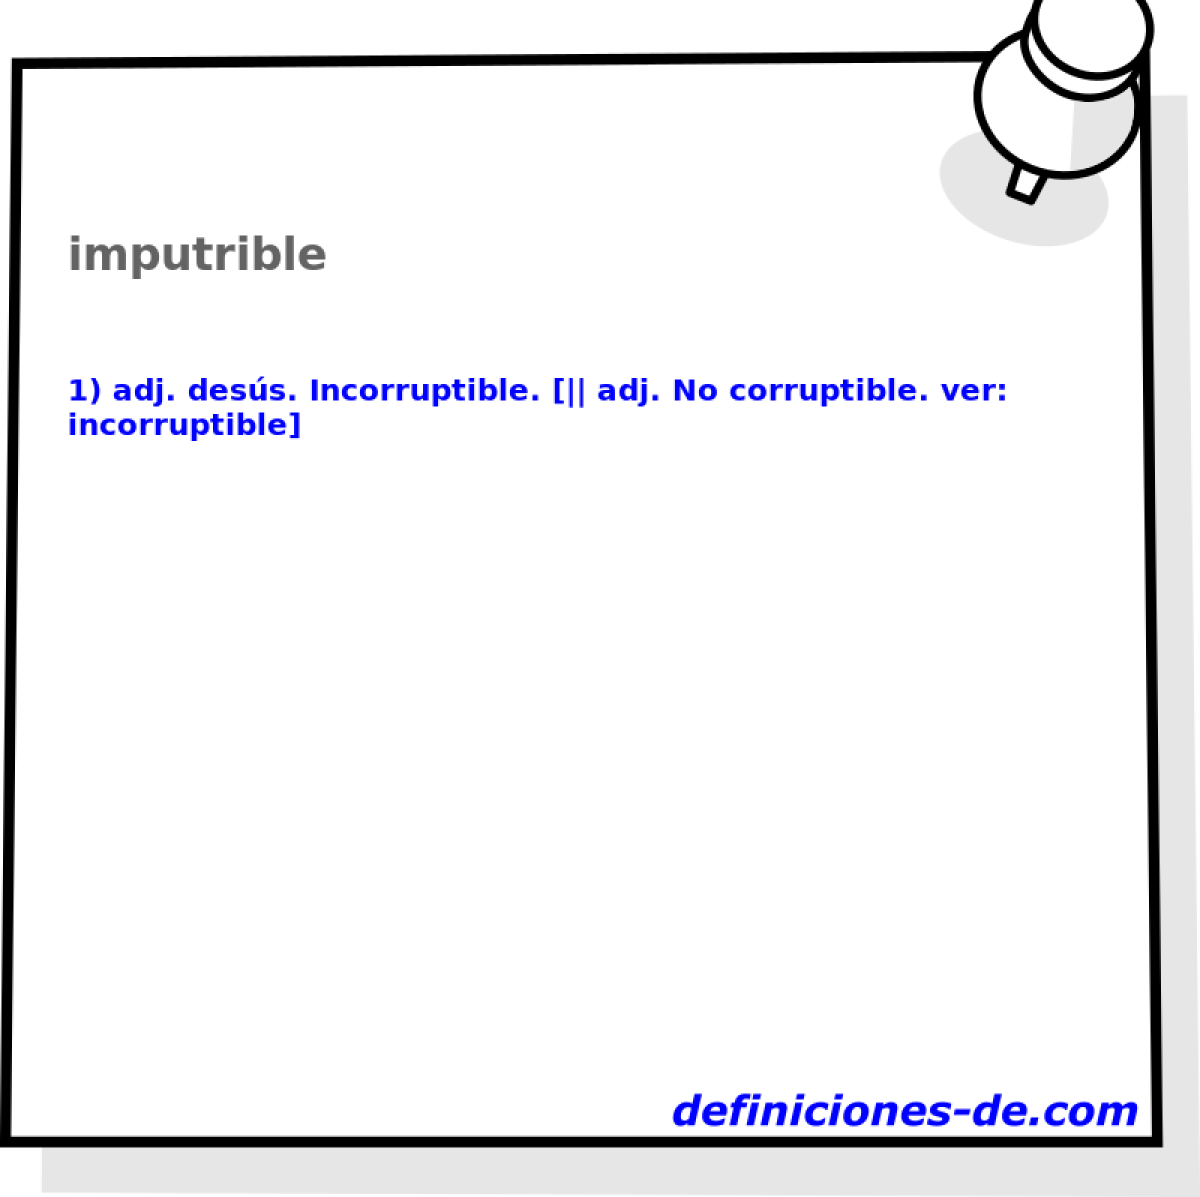 imputrible 